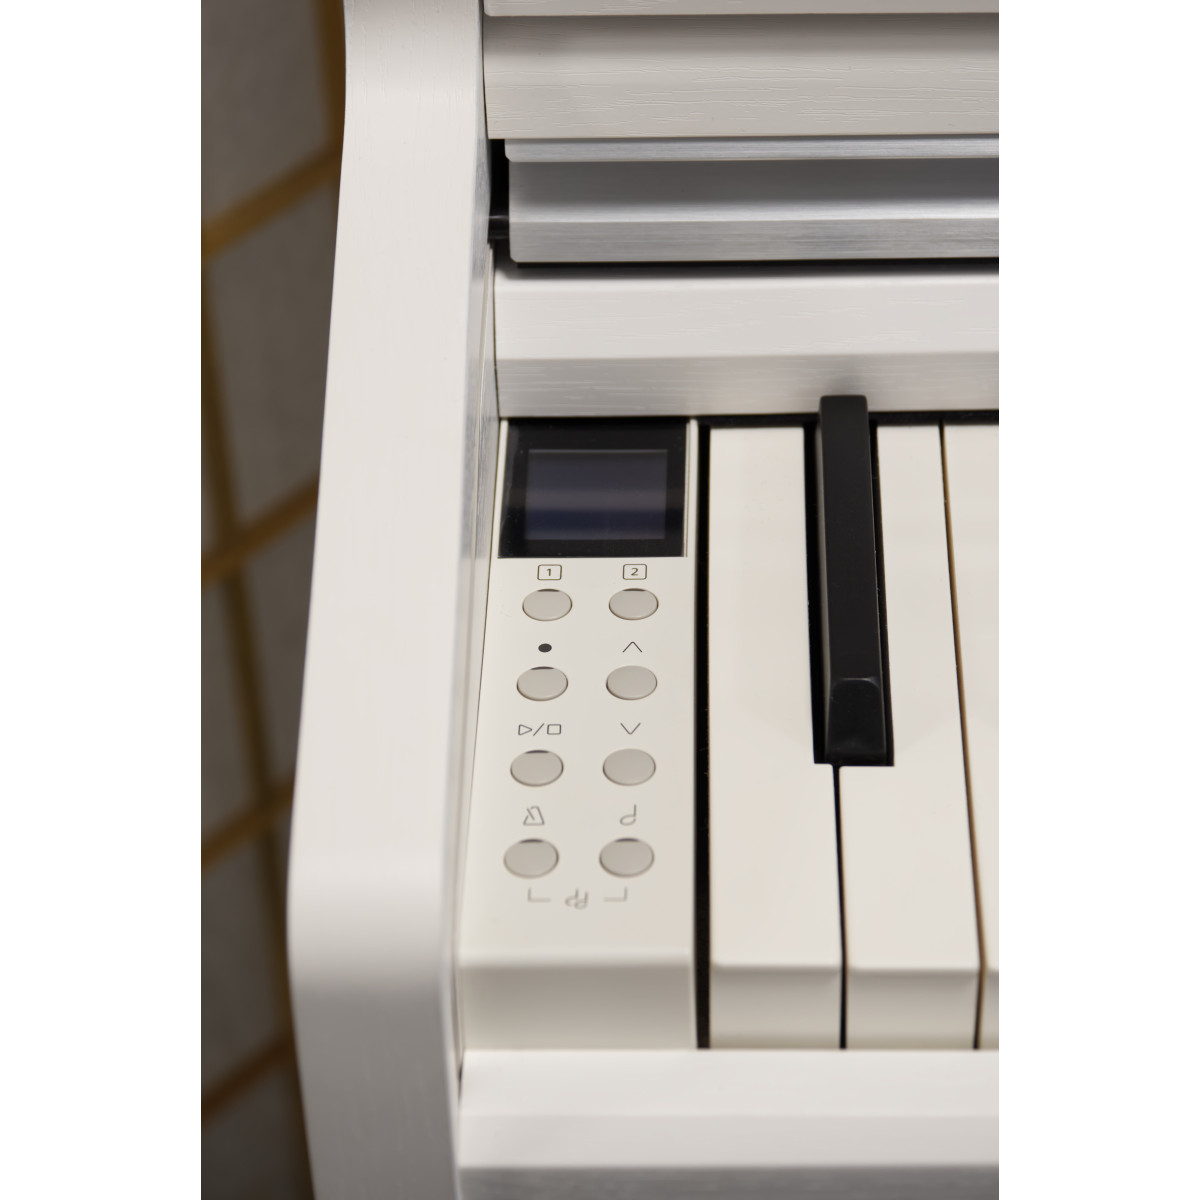 Kawai CA 49 weiss - gebraucht, Ansicht: Tastatur